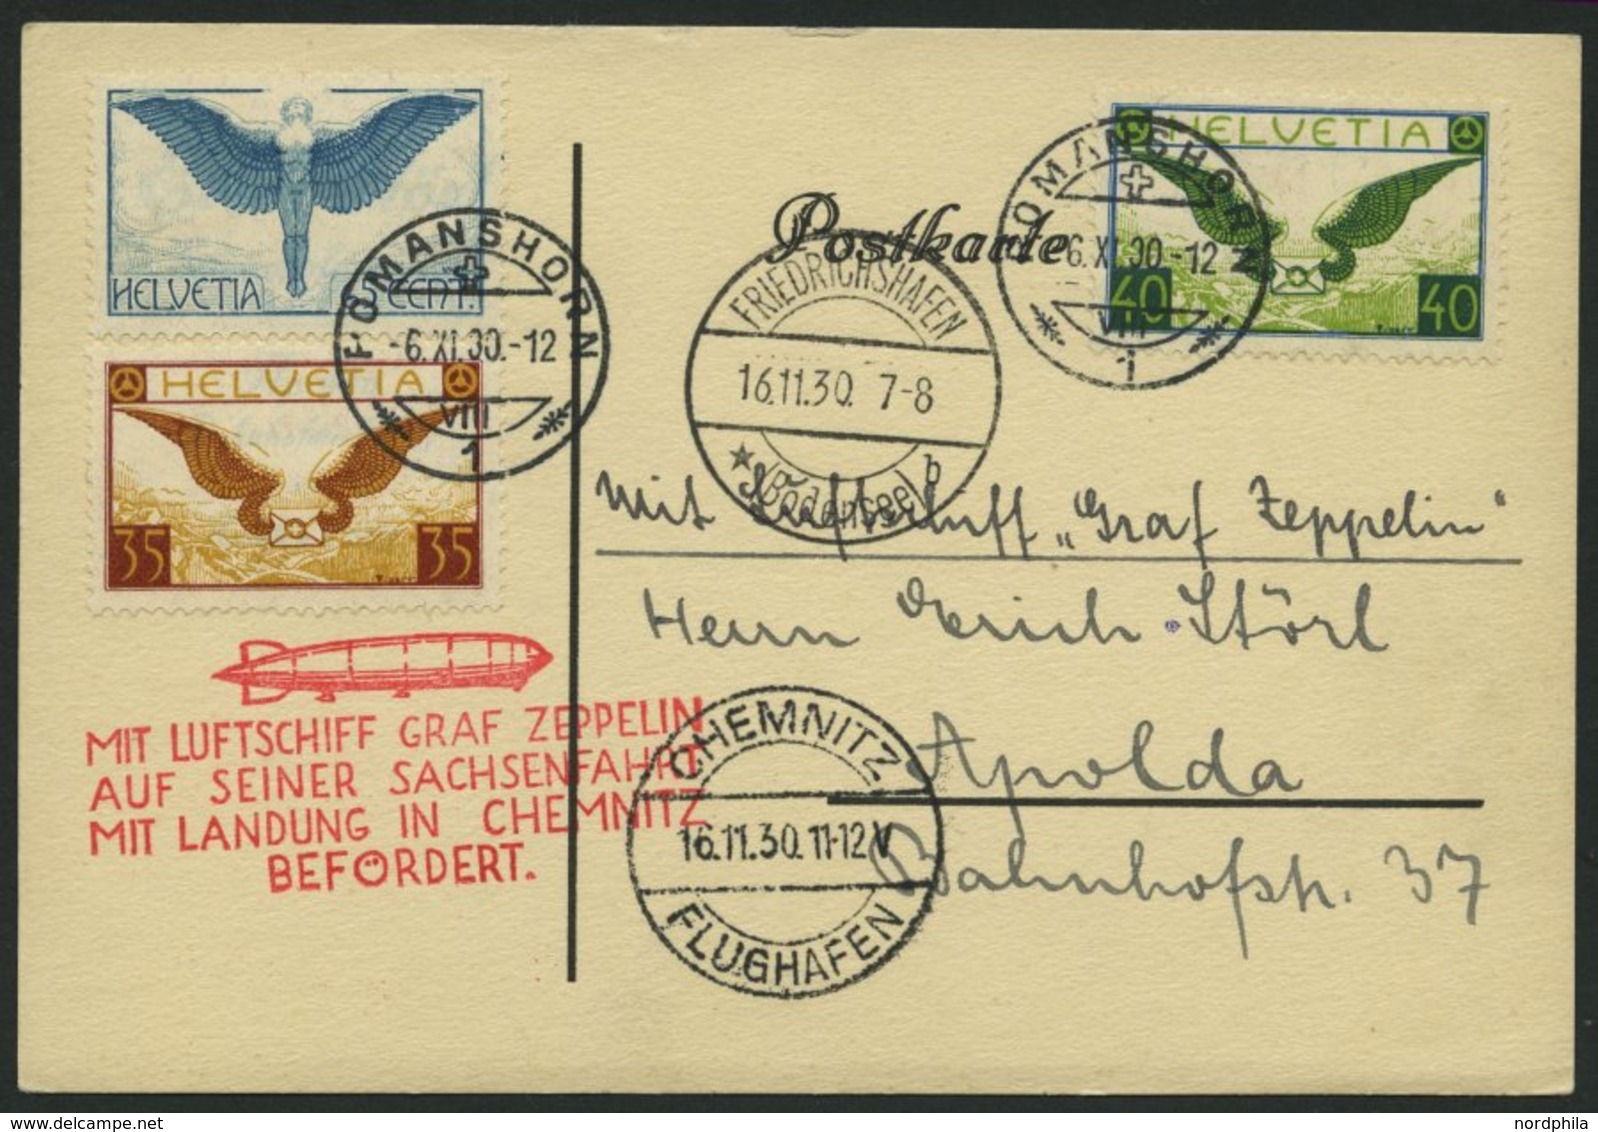 ZULEITUNGSPOST 100 BRIEF, Schweiz: 1930, Fahrt Nach Chemnitz, Prachtkarte - Zeppelins